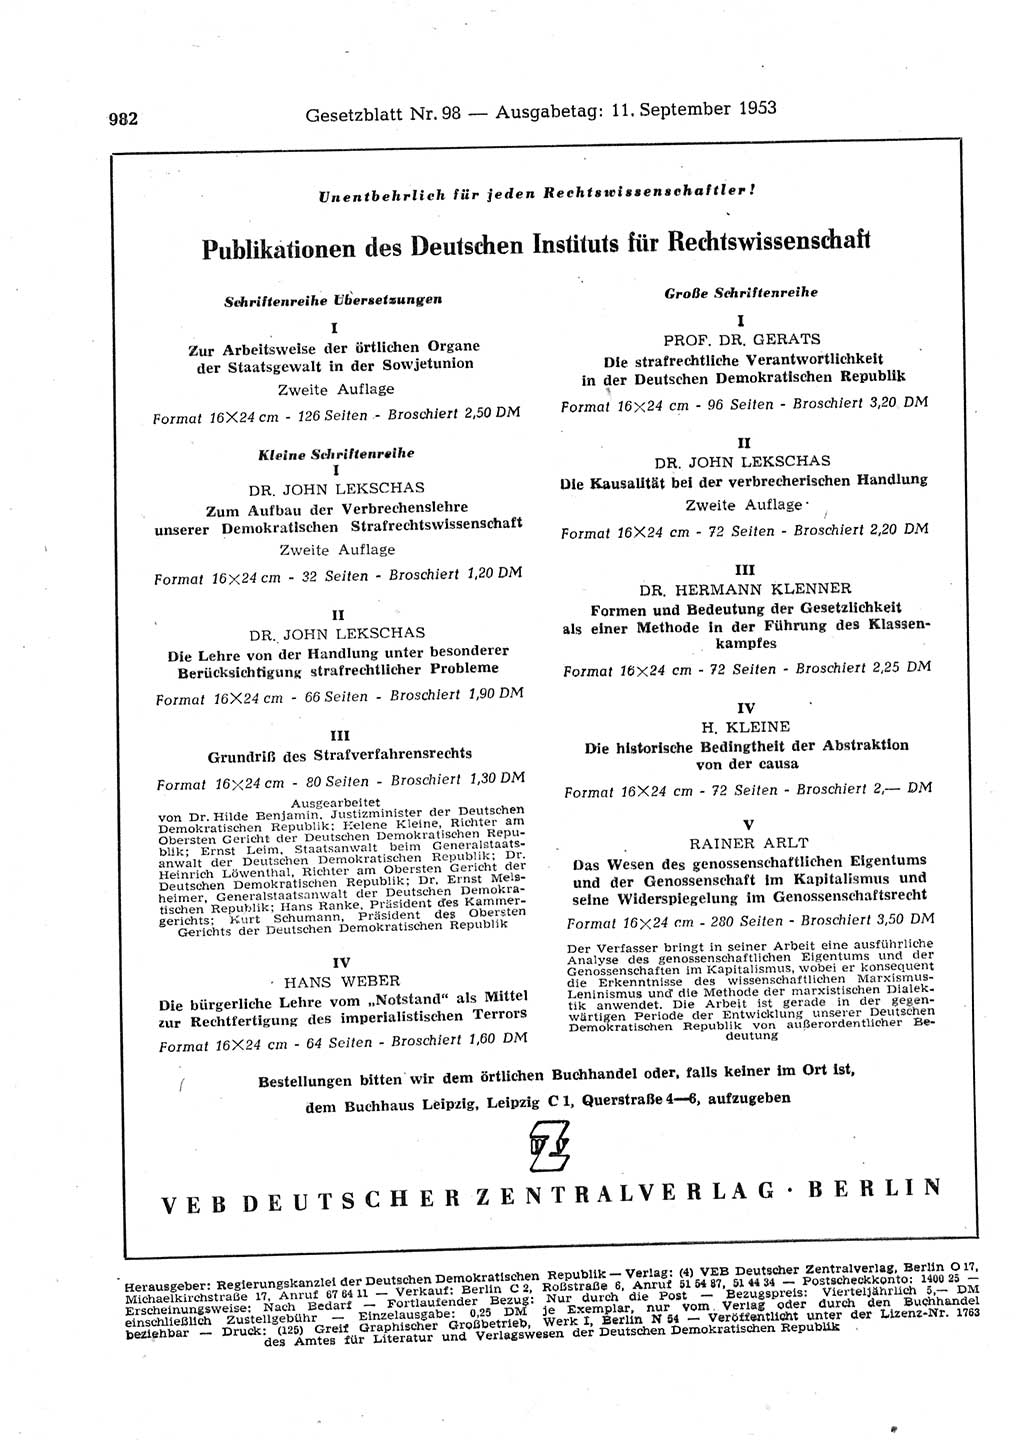 Gesetzblatt (GBl.) der Deutschen Demokratischen Republik (DDR) 1953, Seite 982 (GBl. DDR 1953, S. 982)